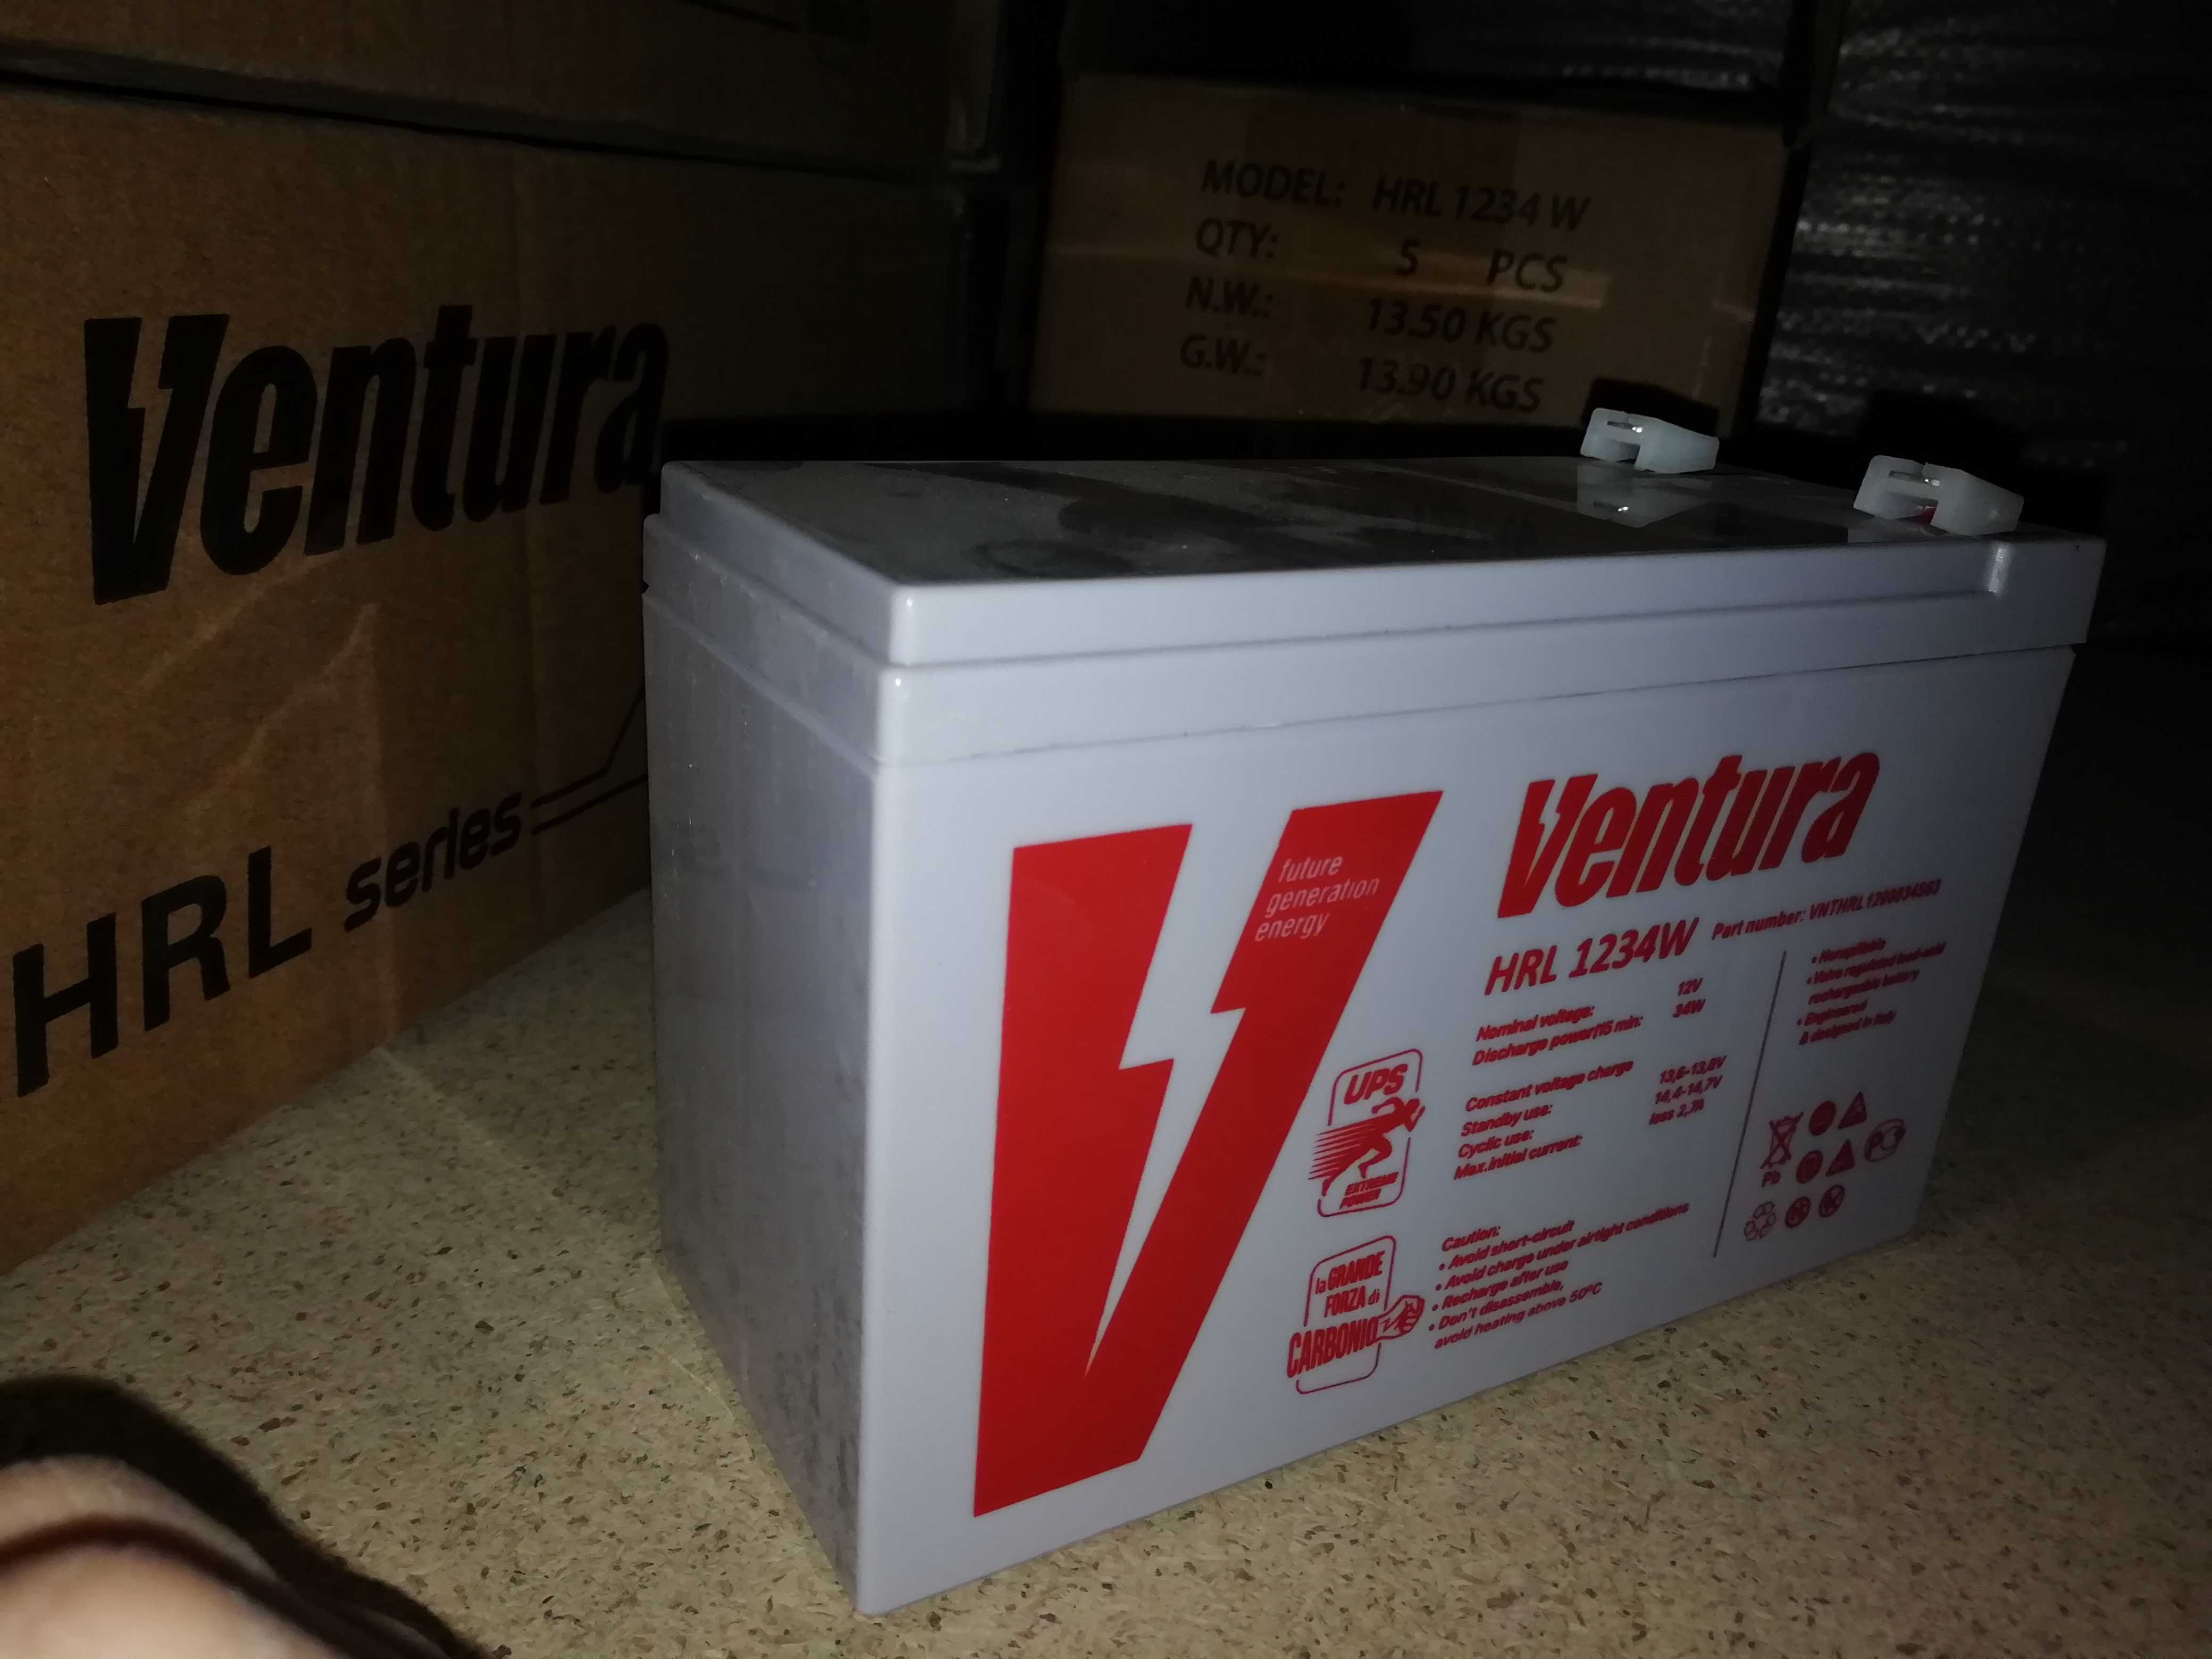 Ventura VG  12В 9ah, 12ah, 18,ah  26ah, 35ah, 40ah, 45ah,, 65ah, 100ah